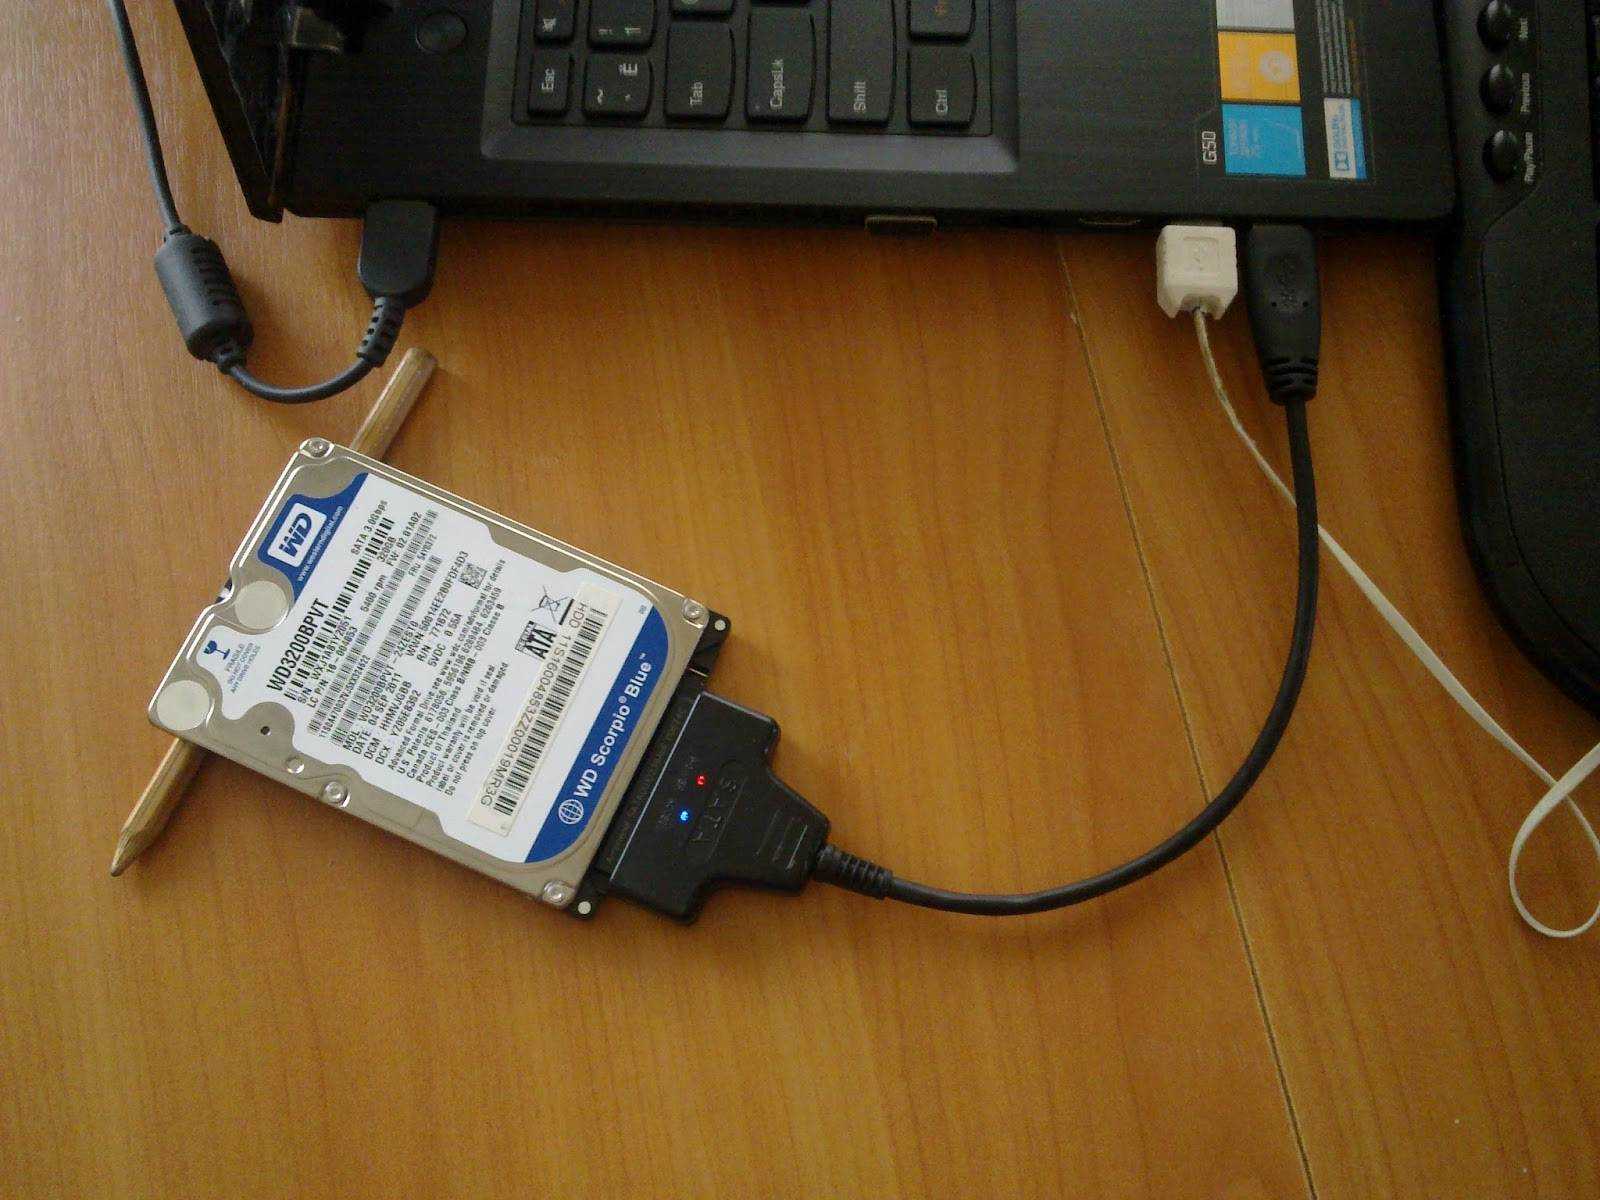 Можно ли к ноутбуку подключить жесткий диск. Подключить жесткий к компу юсб. Подключить жесткий диск SATA через USB. Подключить внешний жесткий диск к ноутбуку. Подключить HDD SATA К ноутбуку через USB.